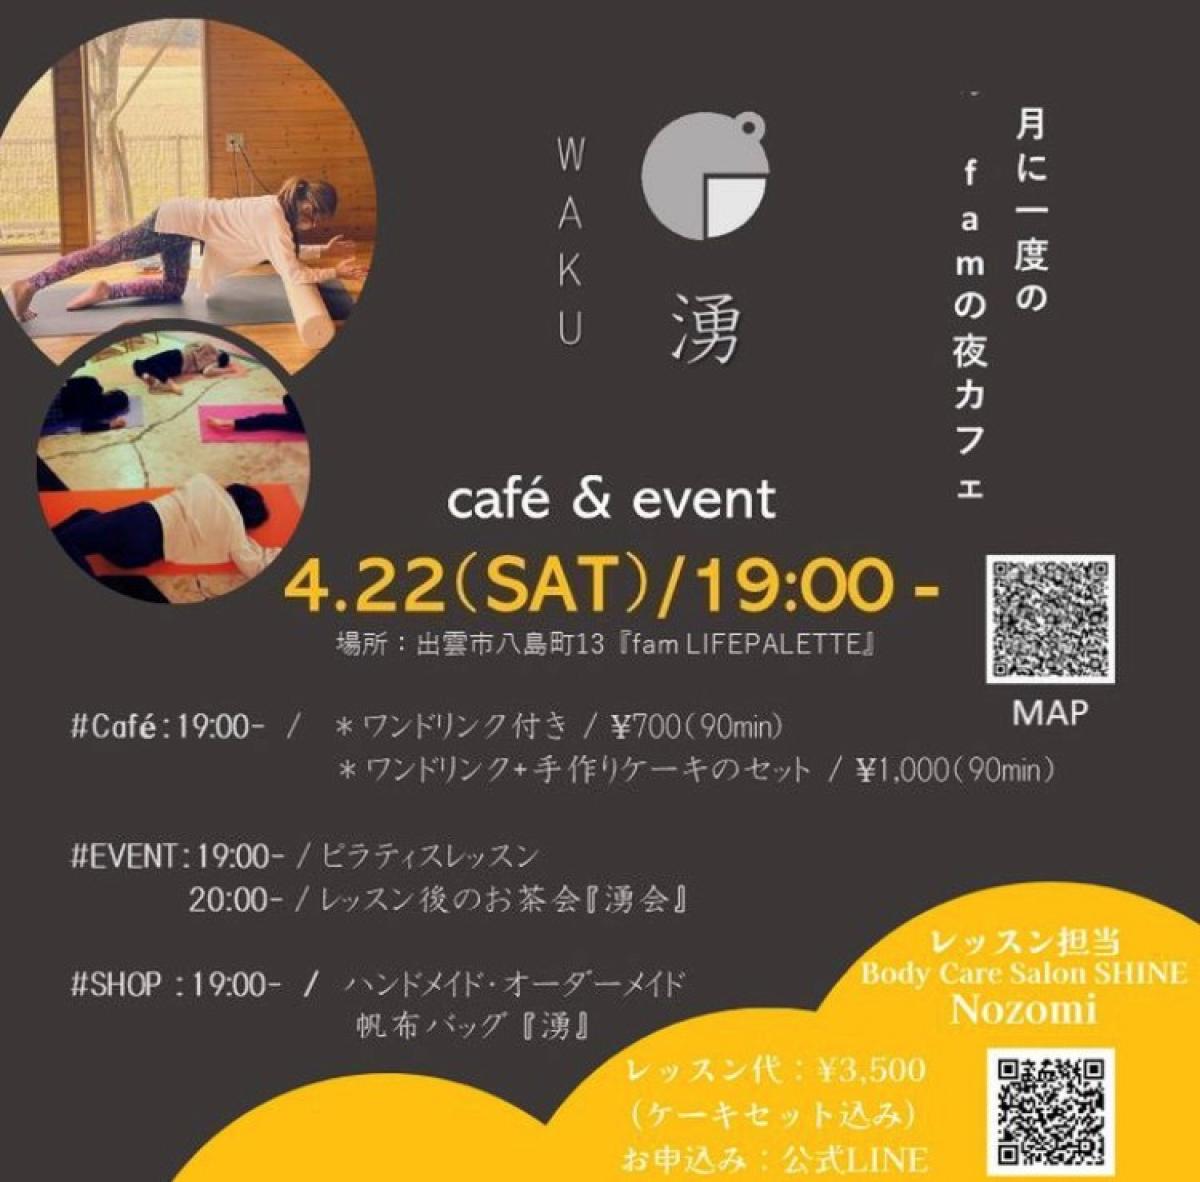 4月22日にnozomiさんがイベントを開催されます！【栄養コンシェルジュ取得後のご活躍】